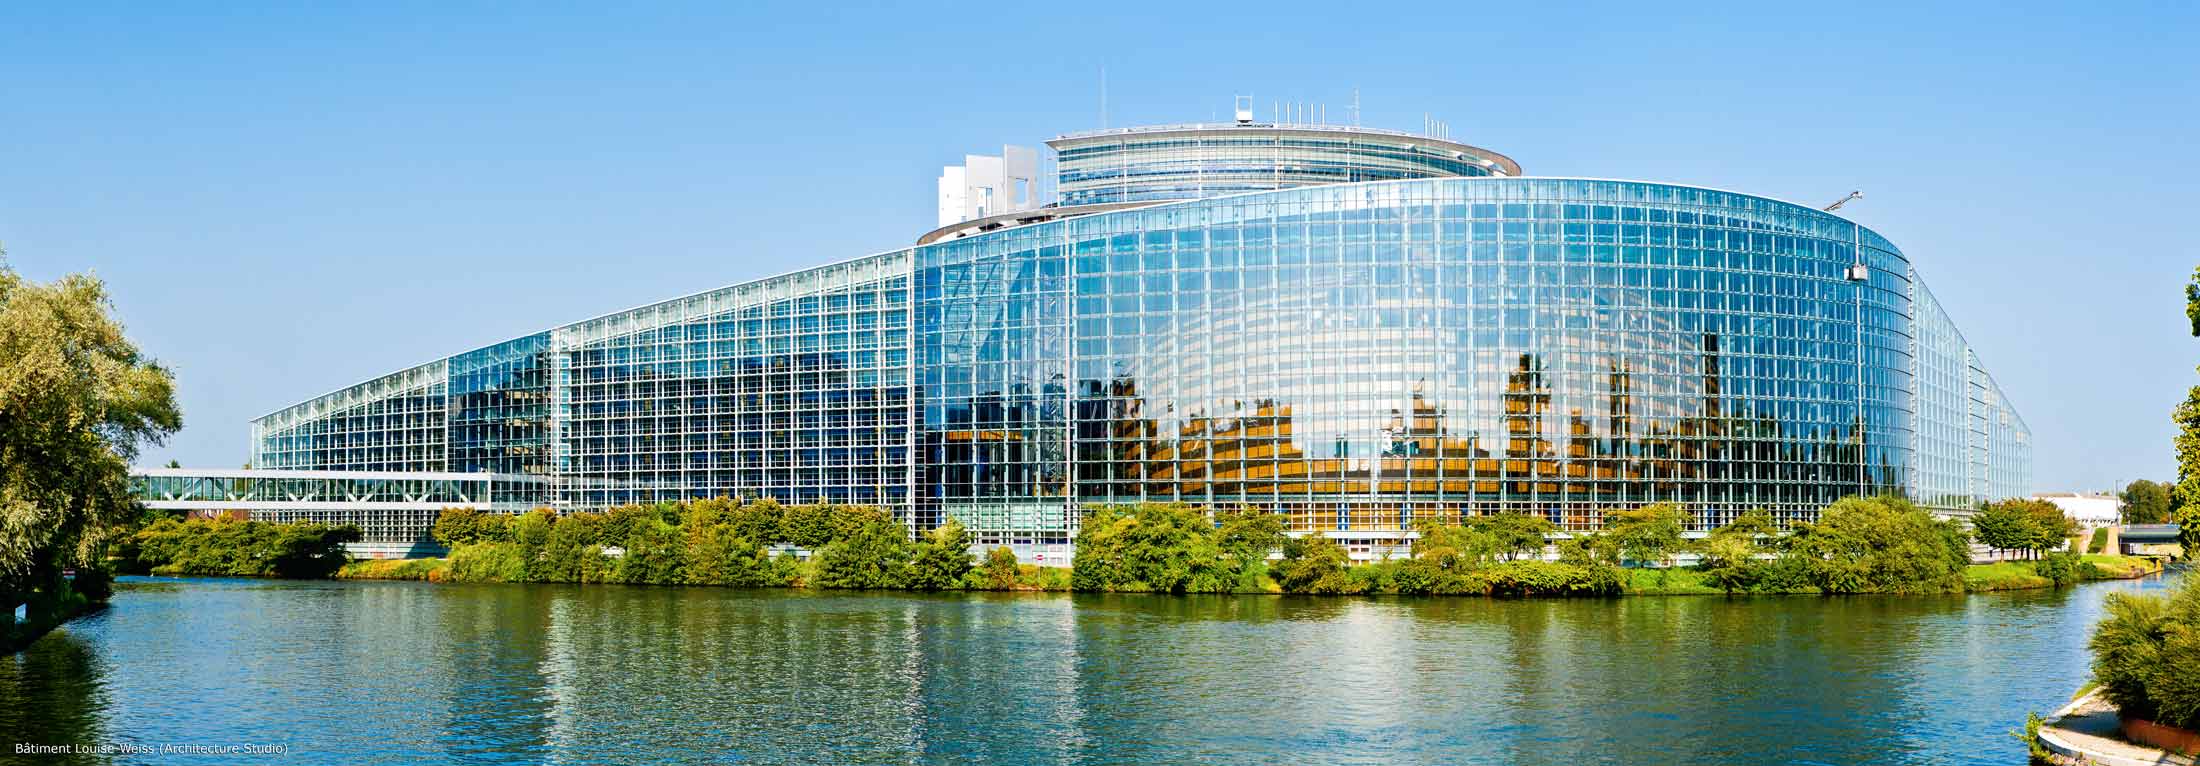 Prise de vue architecturale du Parlement Européen de Strasbourg